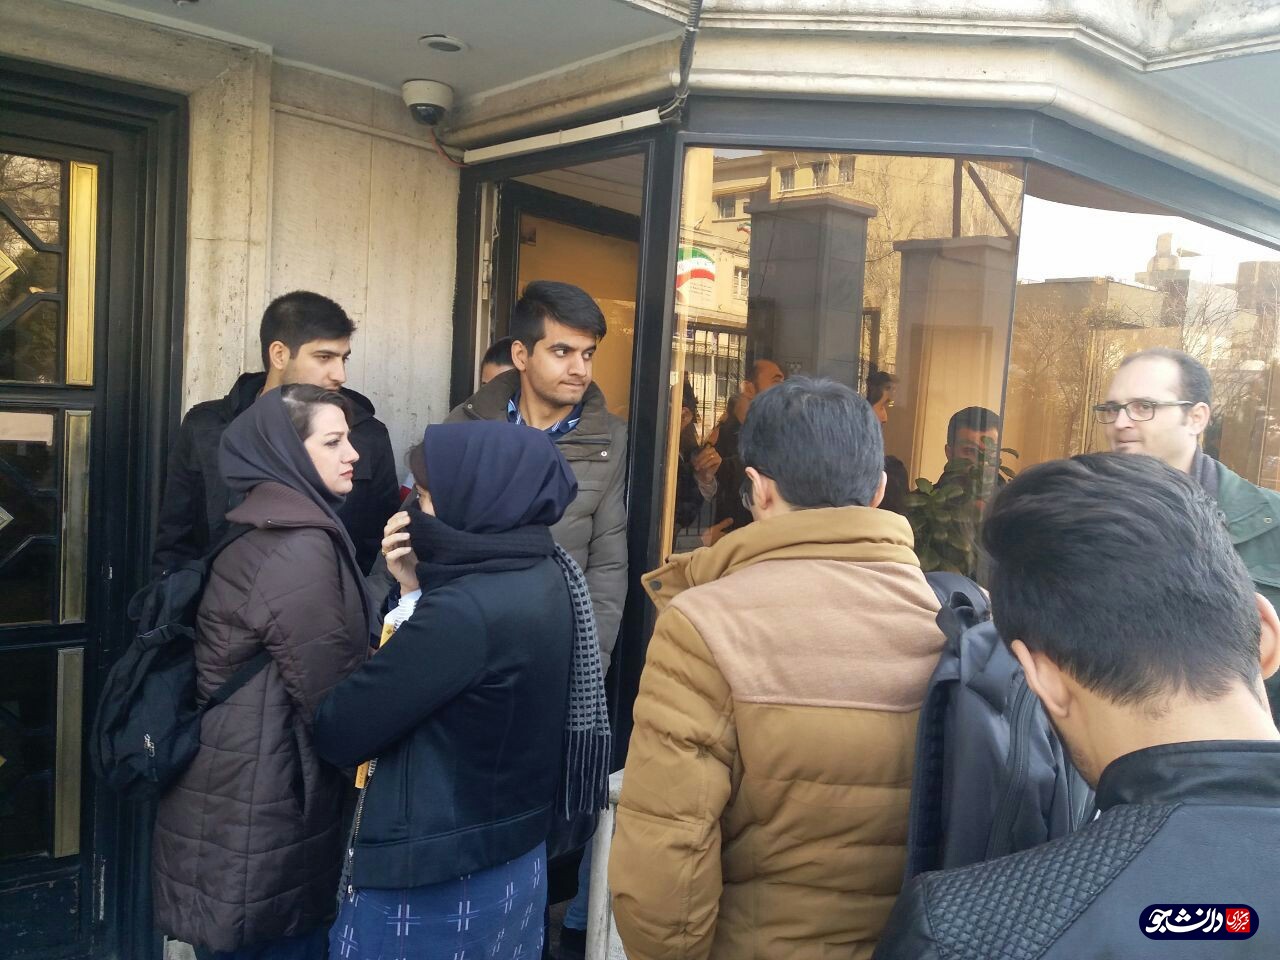 دانشجویان خوابگاه متاهلی جلال مقابل دفتر ریاست دانشگاه تهران تجمع کردند/ مسئولان پاسخگو نیستند!